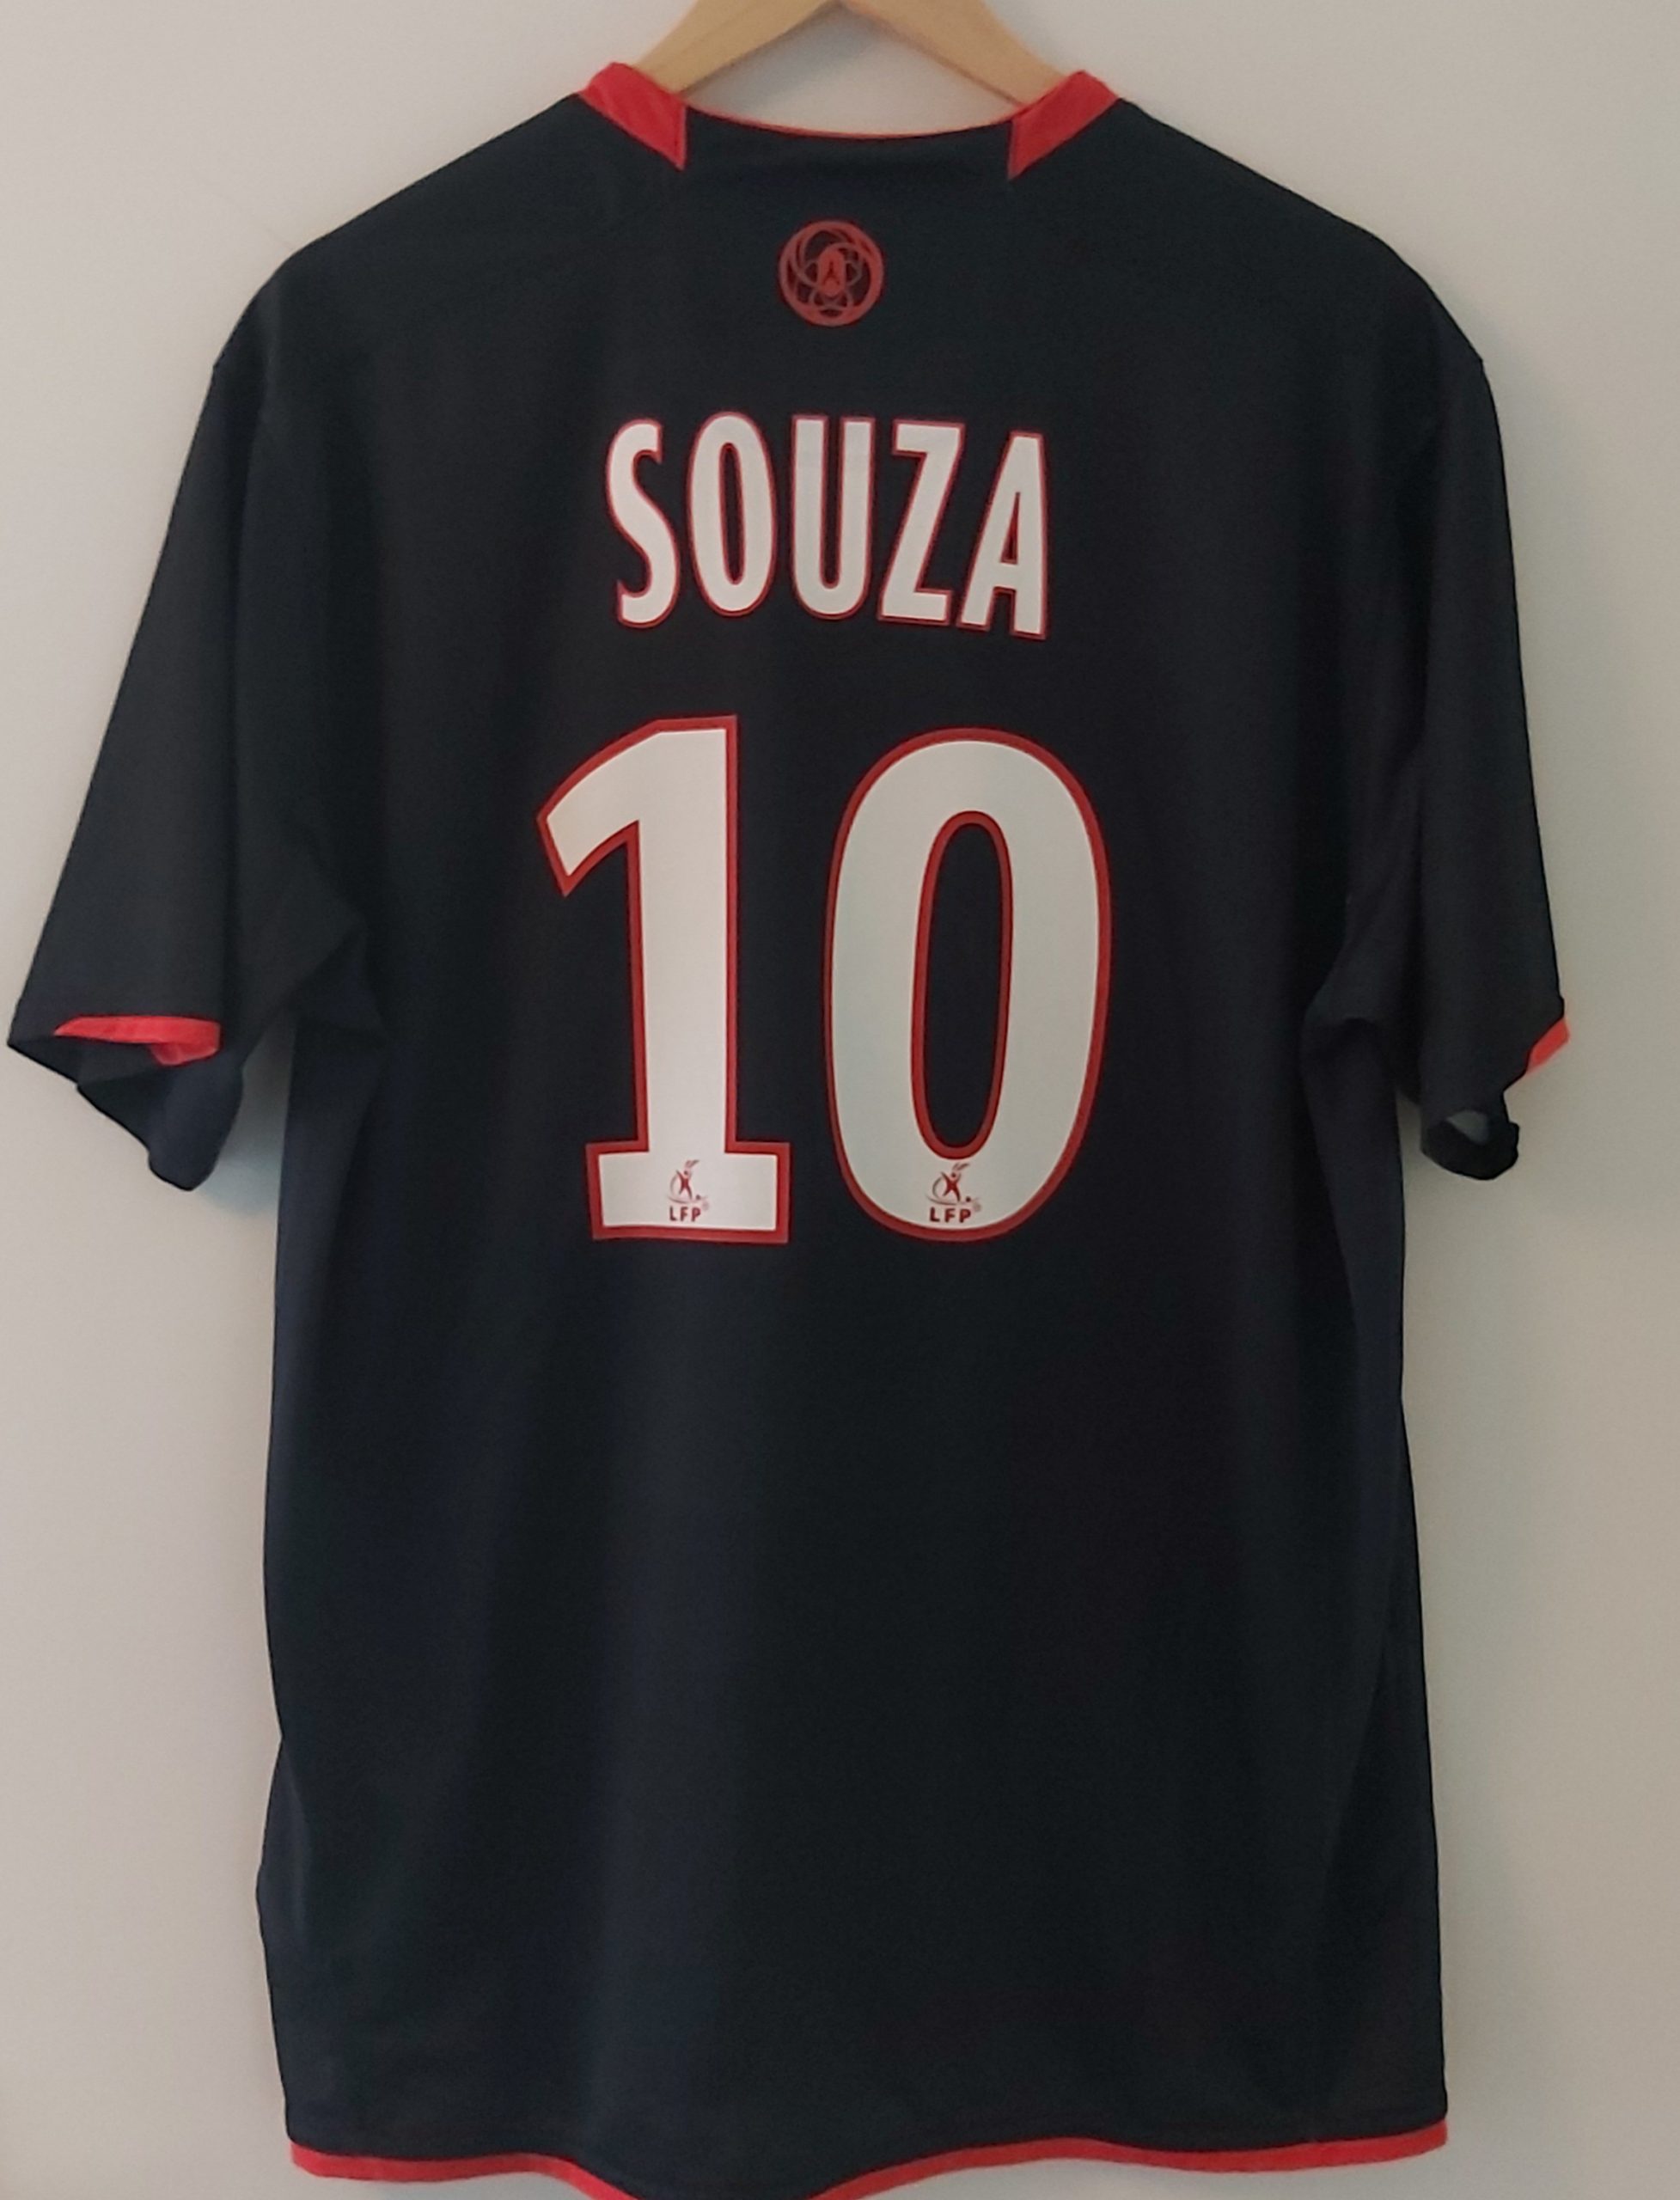 PSG 2007/2008 - SOUZA - YFS - Your Football Shirt